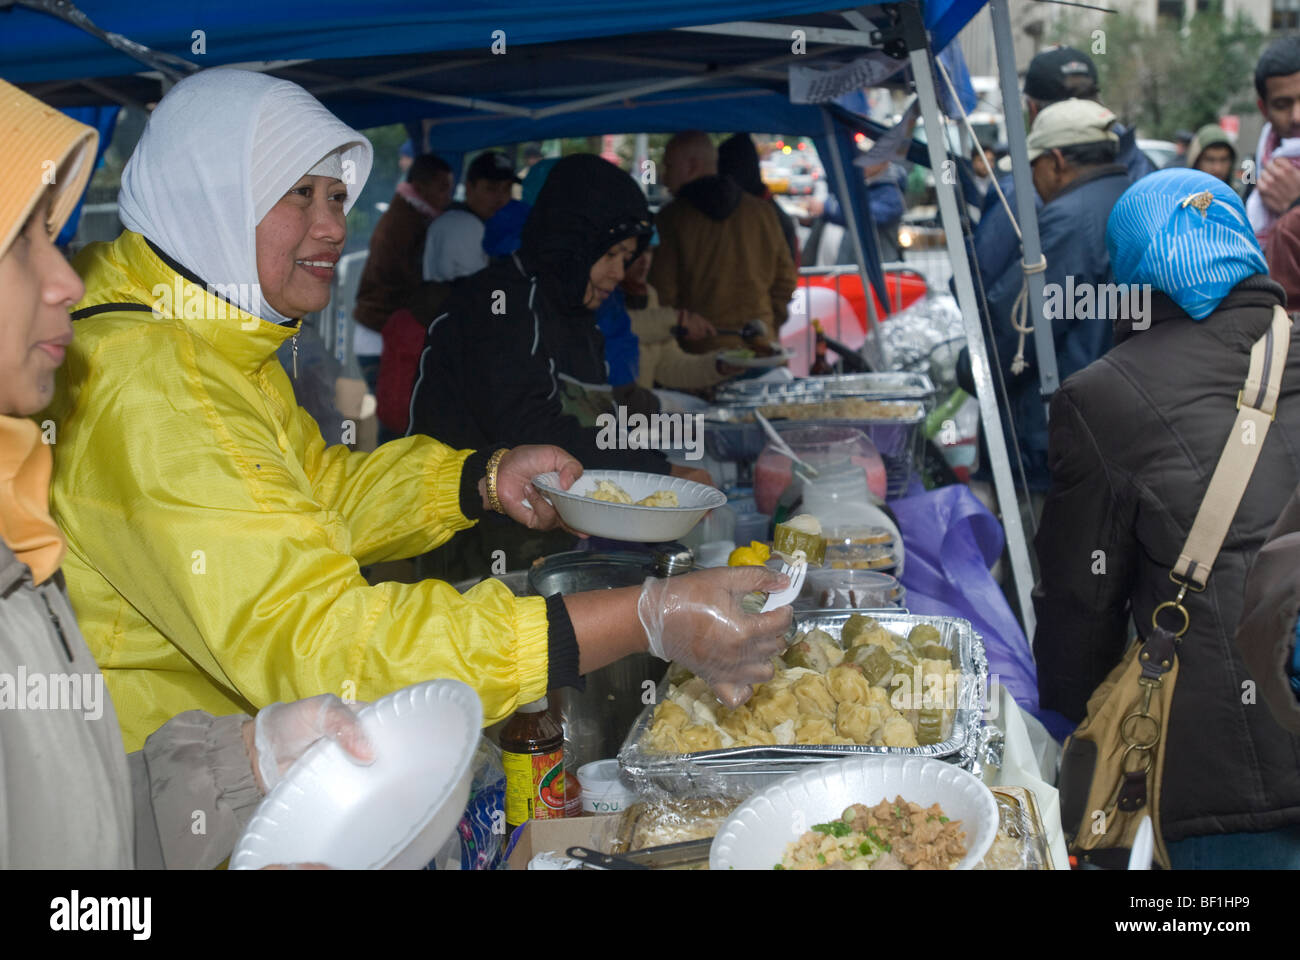 Indonesische muslimische Frauen verkaufen Essen Geldbeschaffung für die Erdbebenhilfe auf einer Straße Messe nach der muslimischen Welt Day Parade Stockfoto